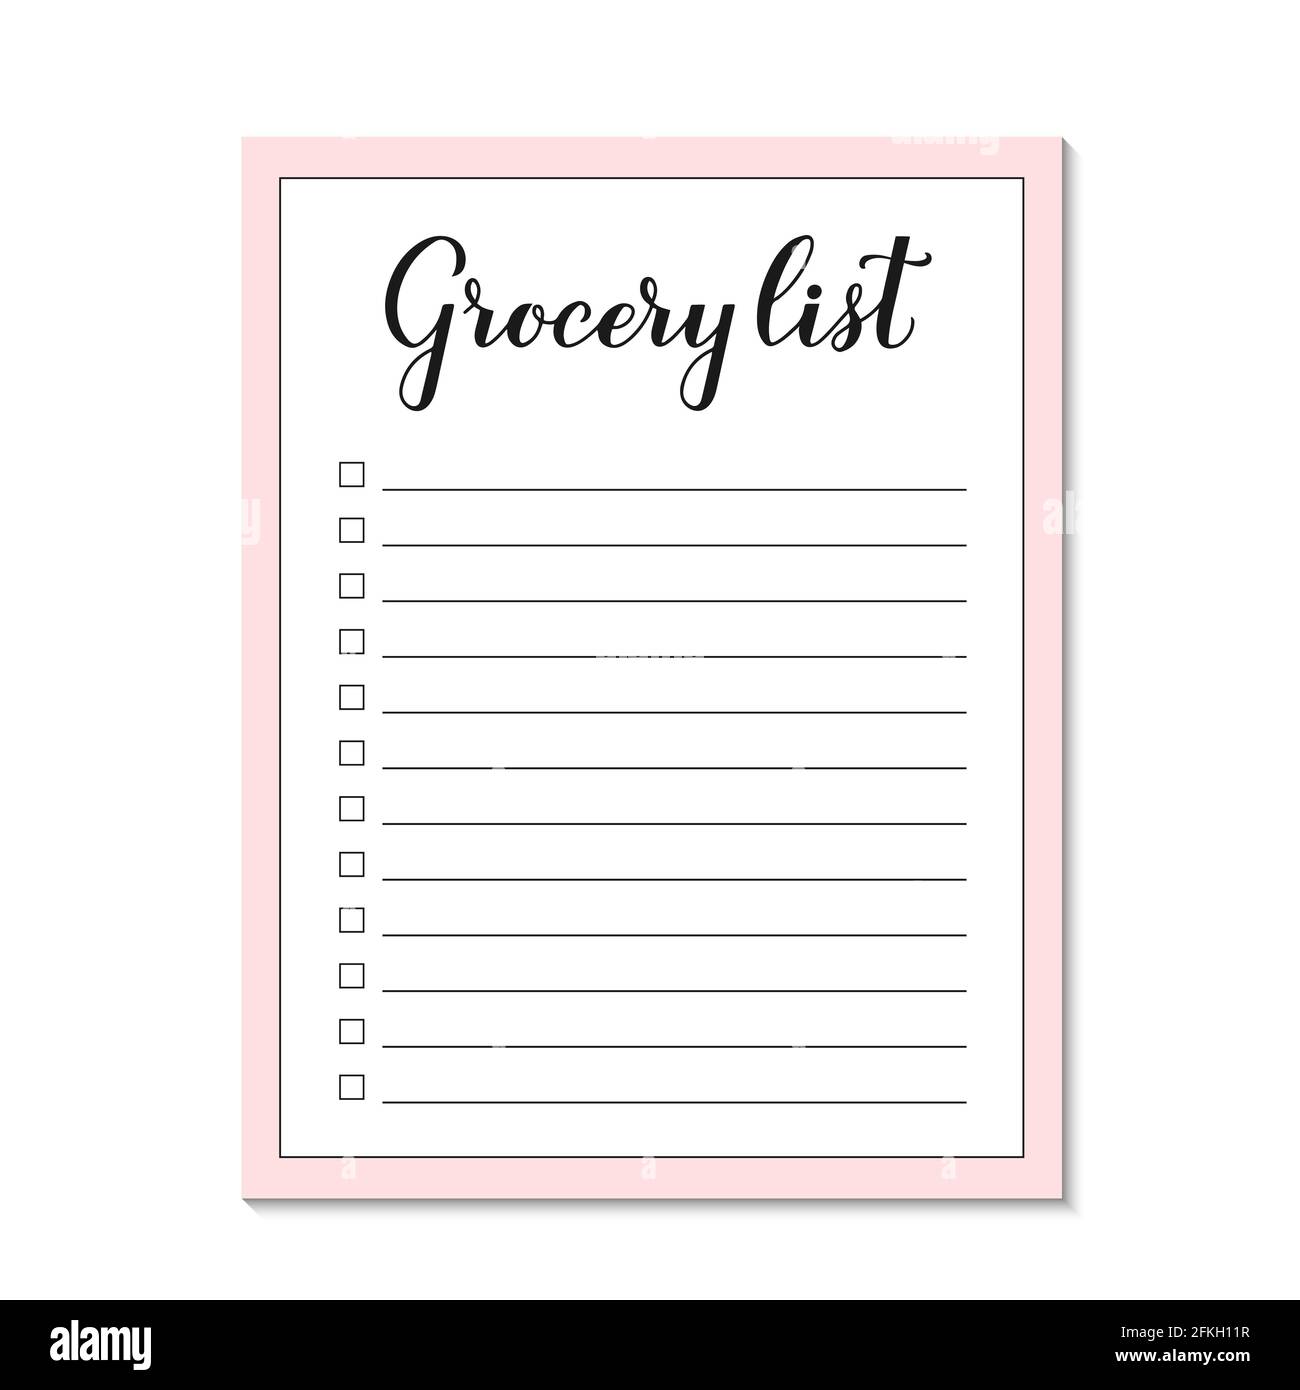 Lebensmittelliste Papierseite. Vorlage für Einkaufslistenblatt Within Blank Grocery Shopping List Template